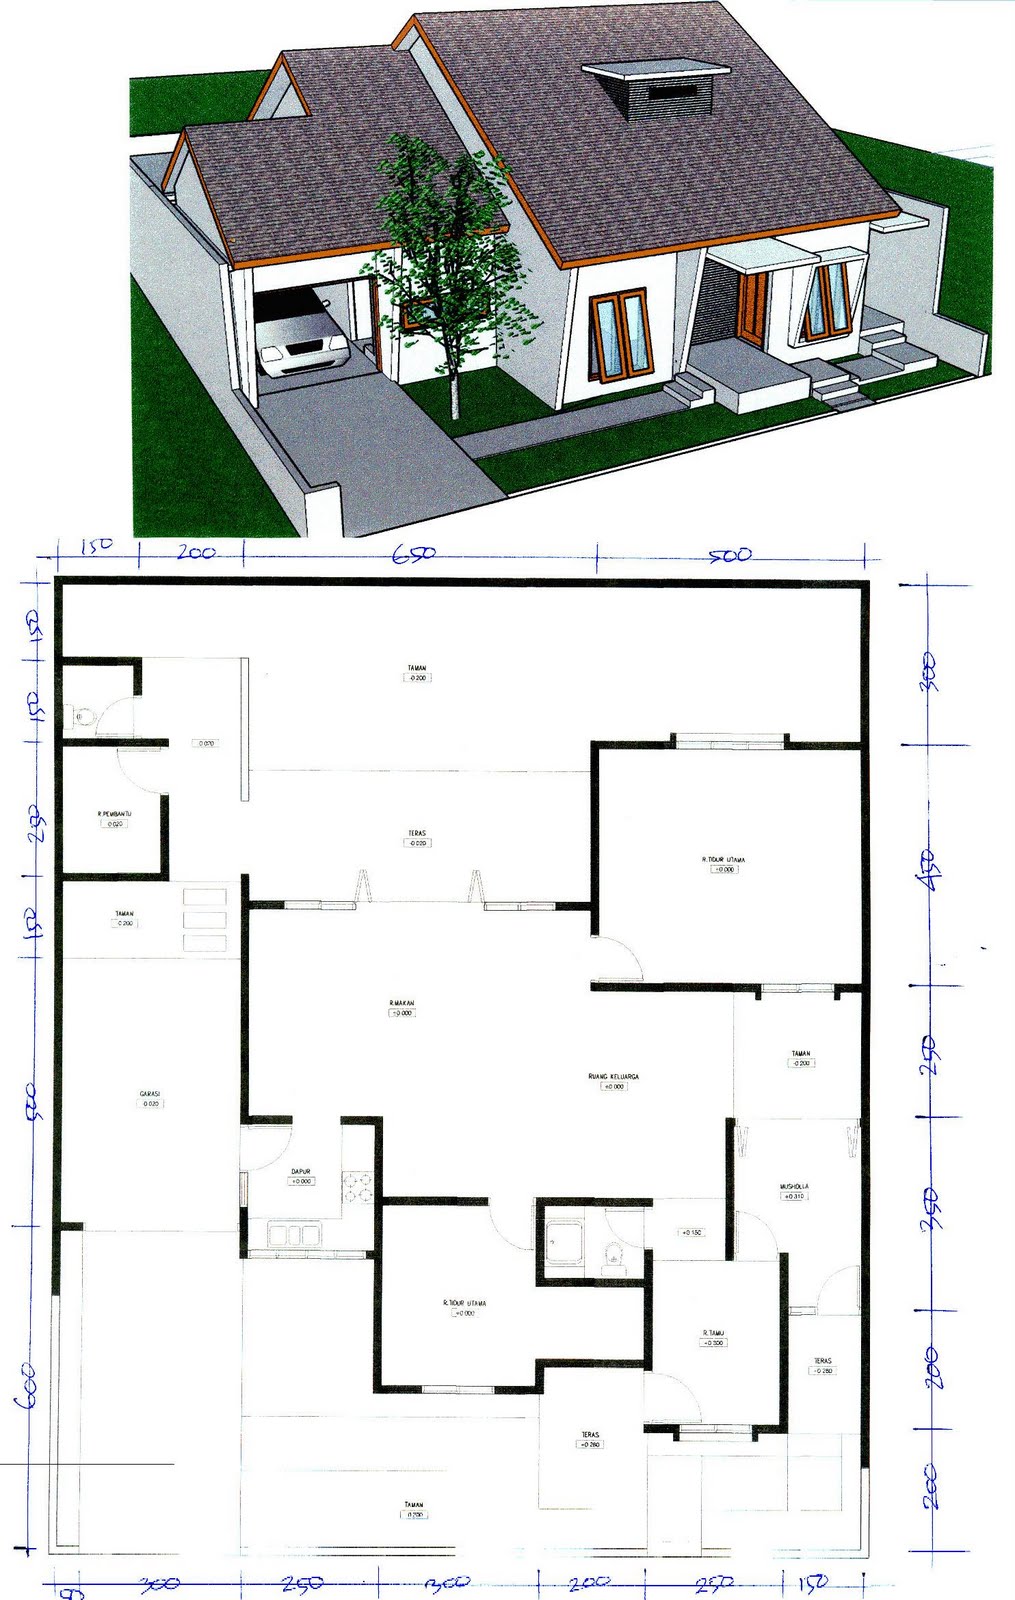 Desain Rumah 2016 Design Rumah Idaman Images